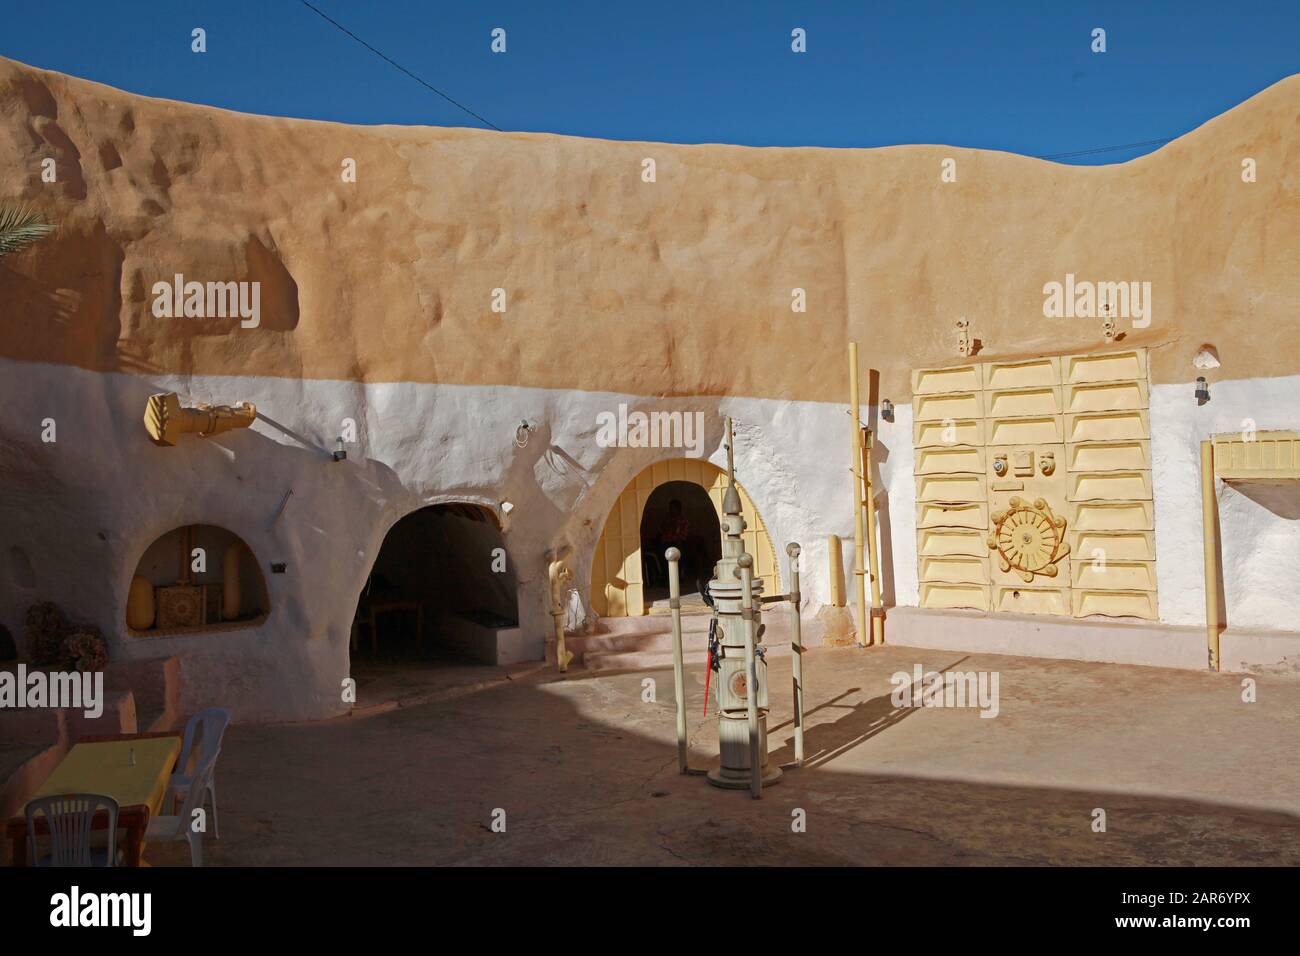 Patio et murs d'un hôtel souterrain Sidi Idriss à Matmata, en Tunisie, où une partie du film Star Wars a été filmée. Banque D'Images